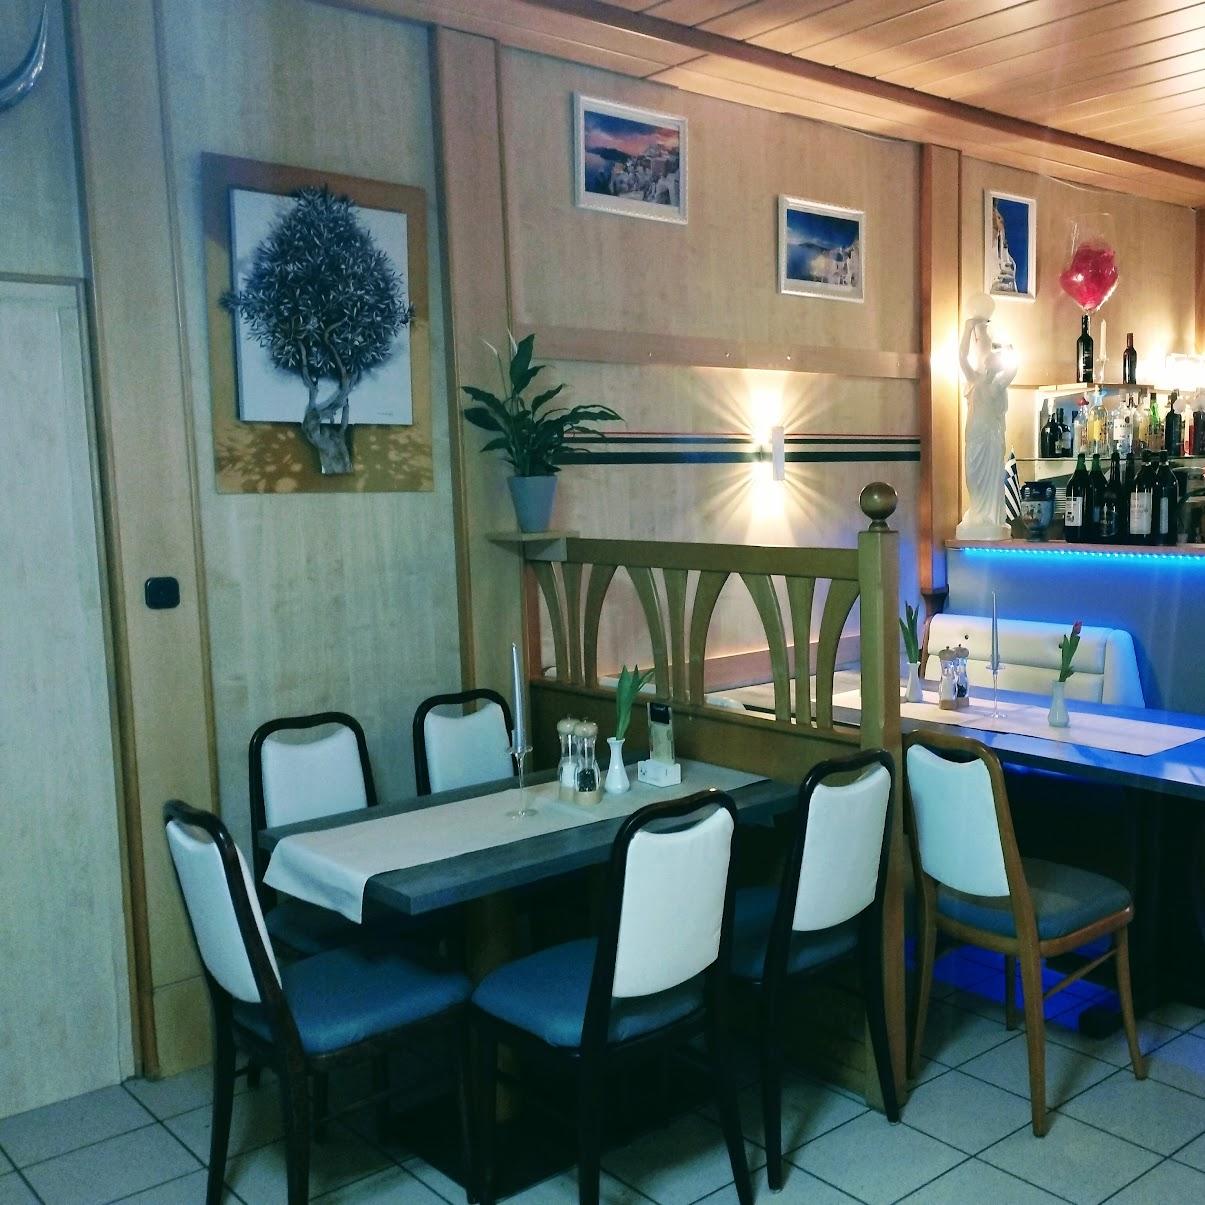 Restaurant "Griechisches Taverne Meteora" in Zwiesel